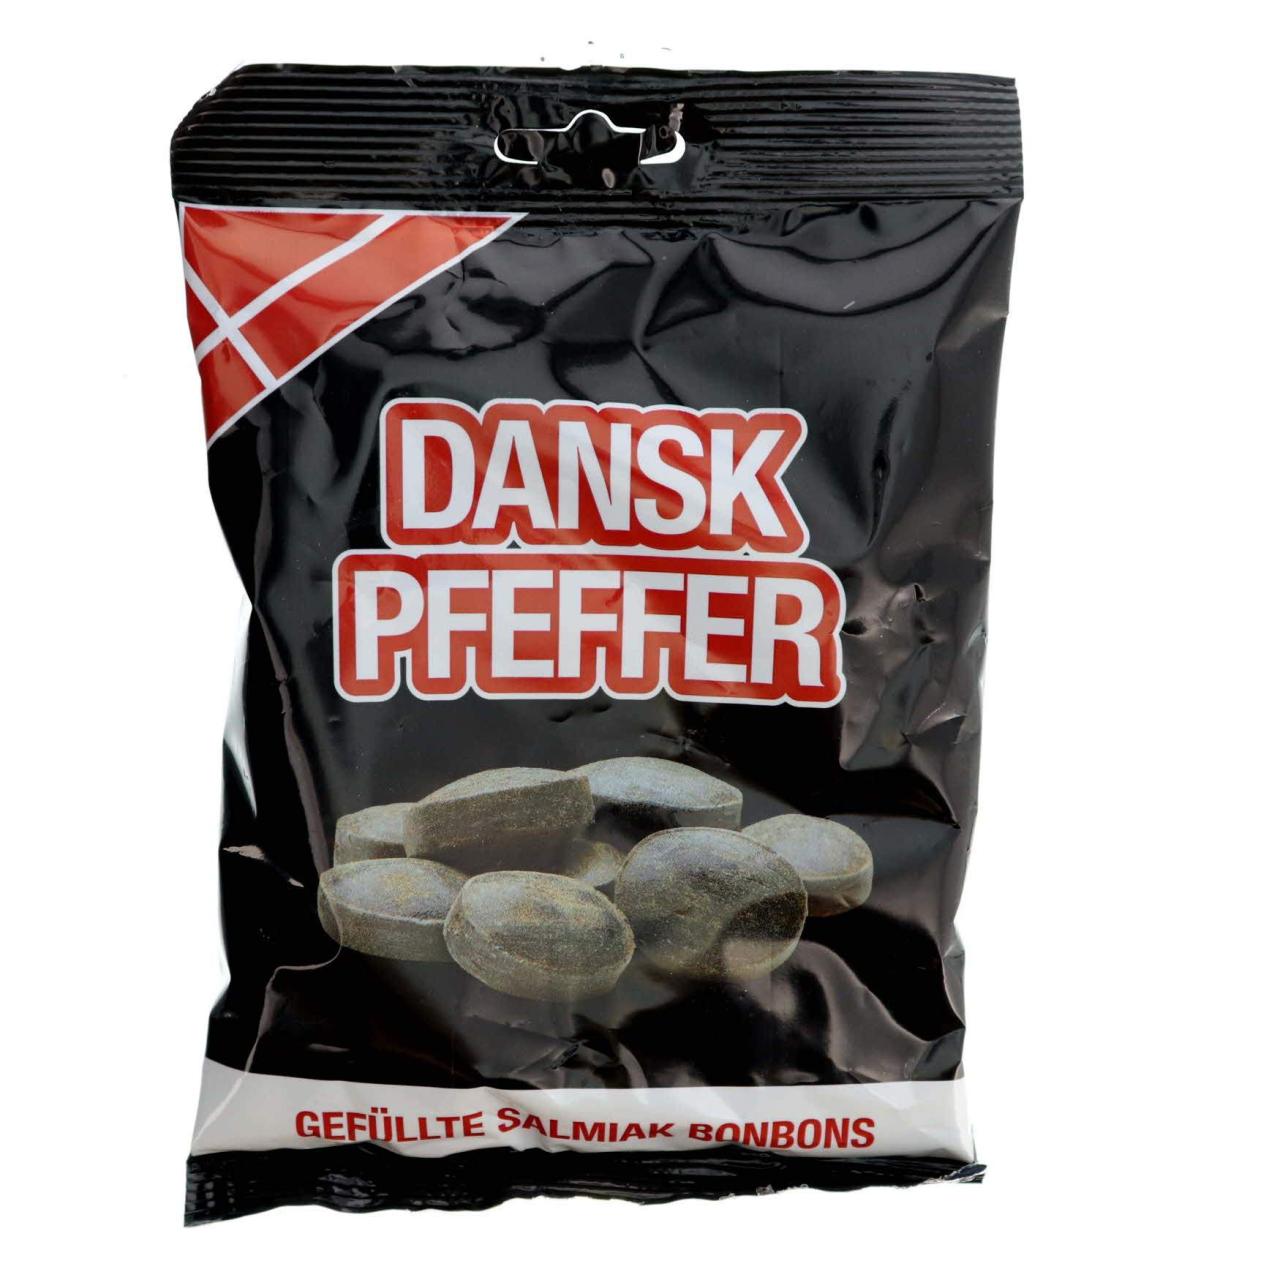 Dansk Pfeffer Gefüllte Salmiak Bonbons 200g